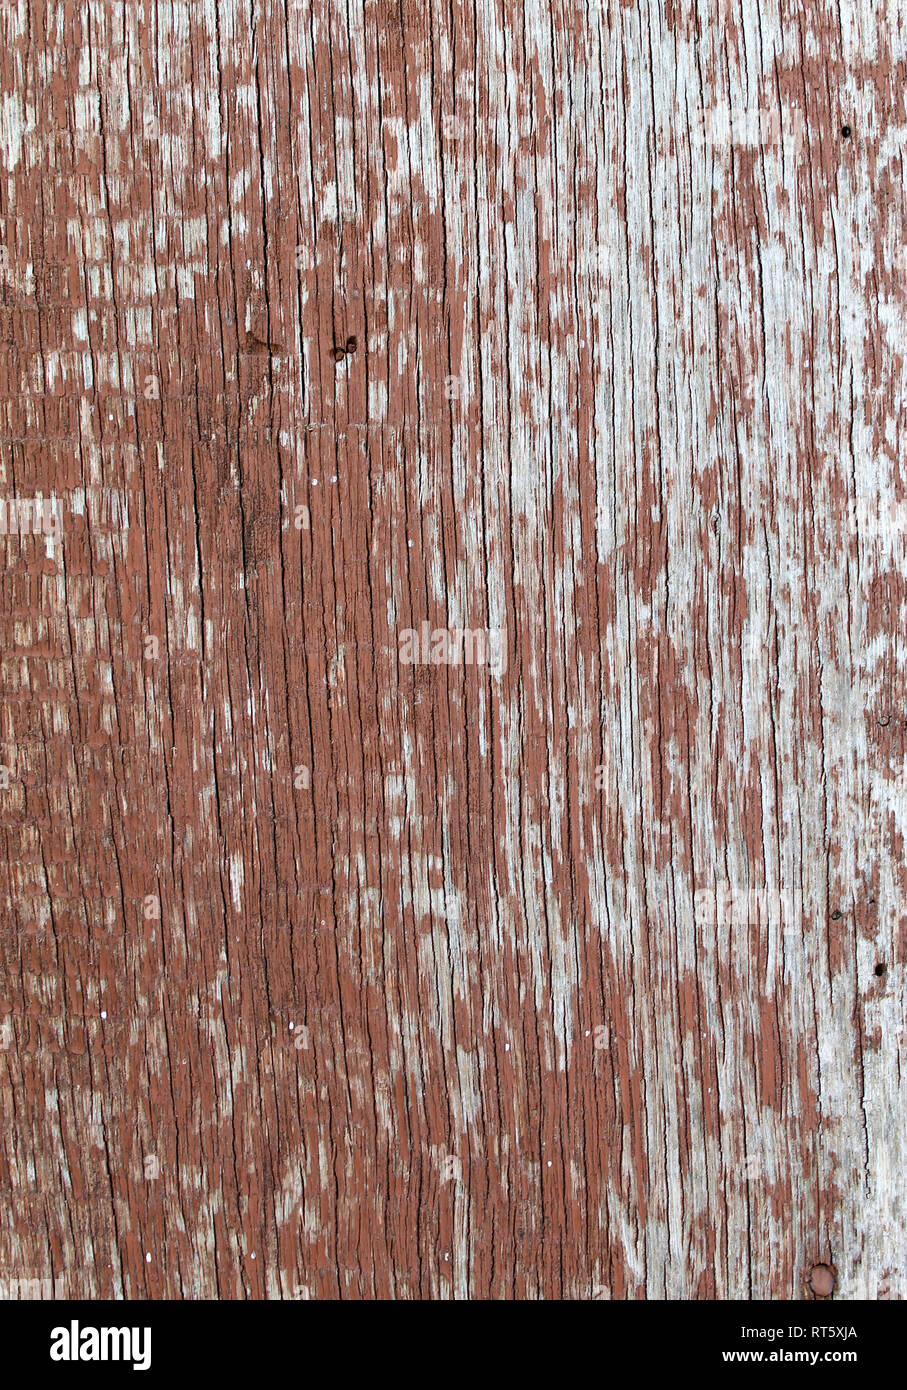 Alte Holz- Hintergrund mit bleibt der Stücke von Reste der alten Farbe auf Holz. Textur eines alten Baumes, Board mit Farbe, vintage Hintergrund Peeling Stockfoto